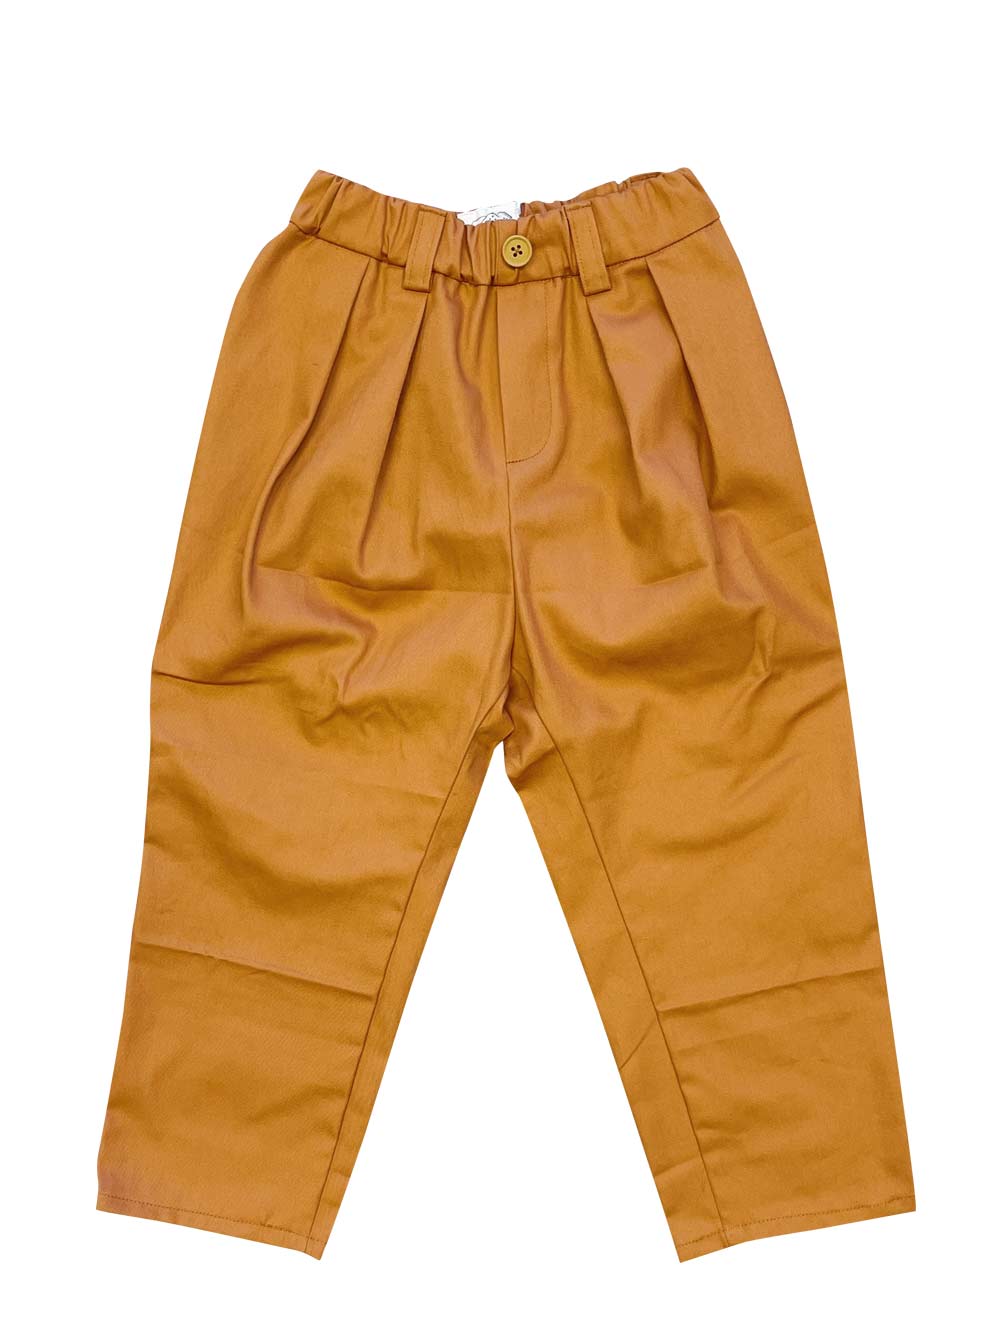 Swoon Orange Pants